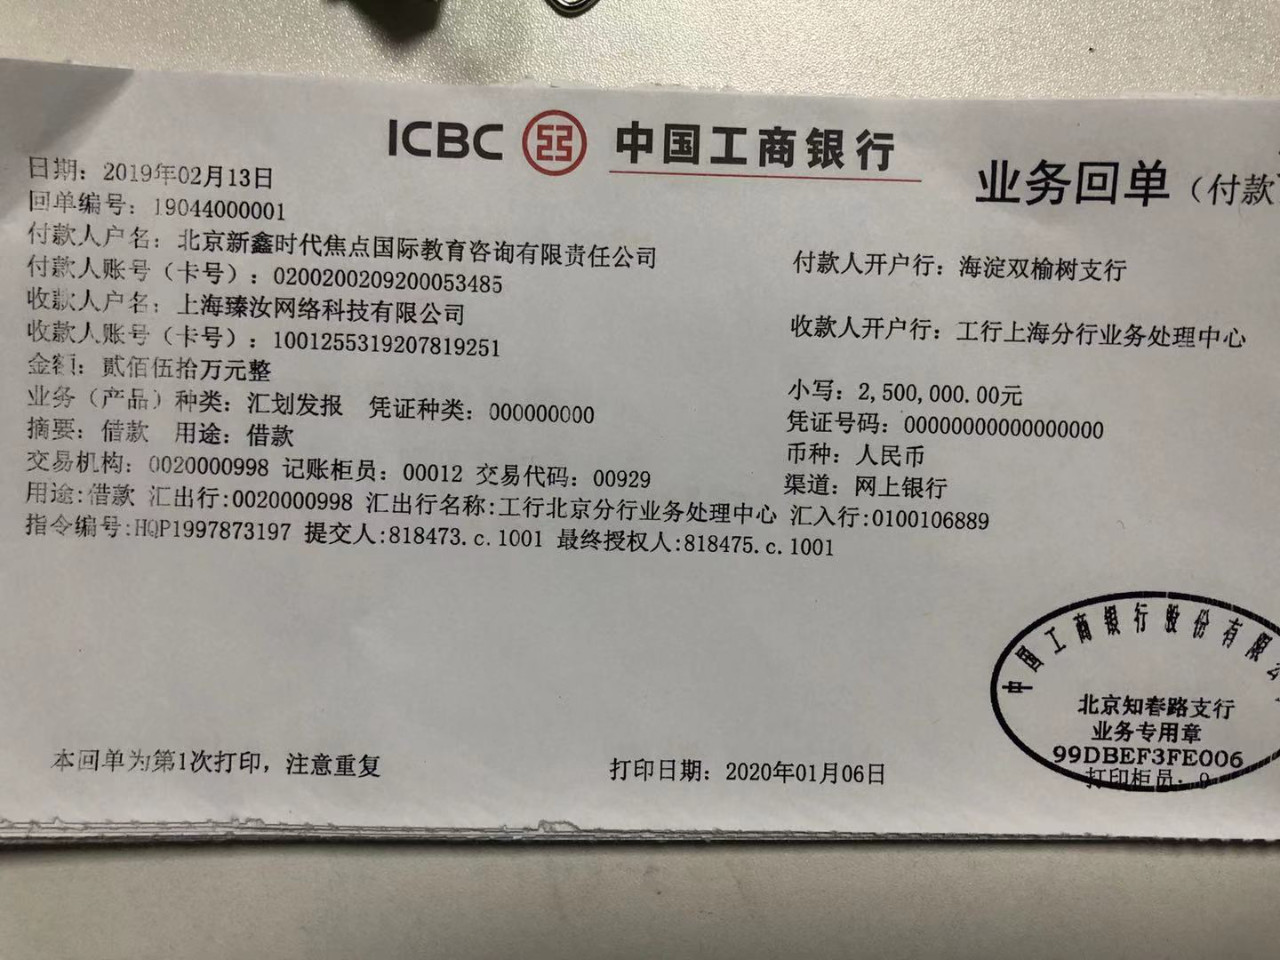 2月至5月,共计向上海臻汝转账880万元,其中三条转账用途显示为借款